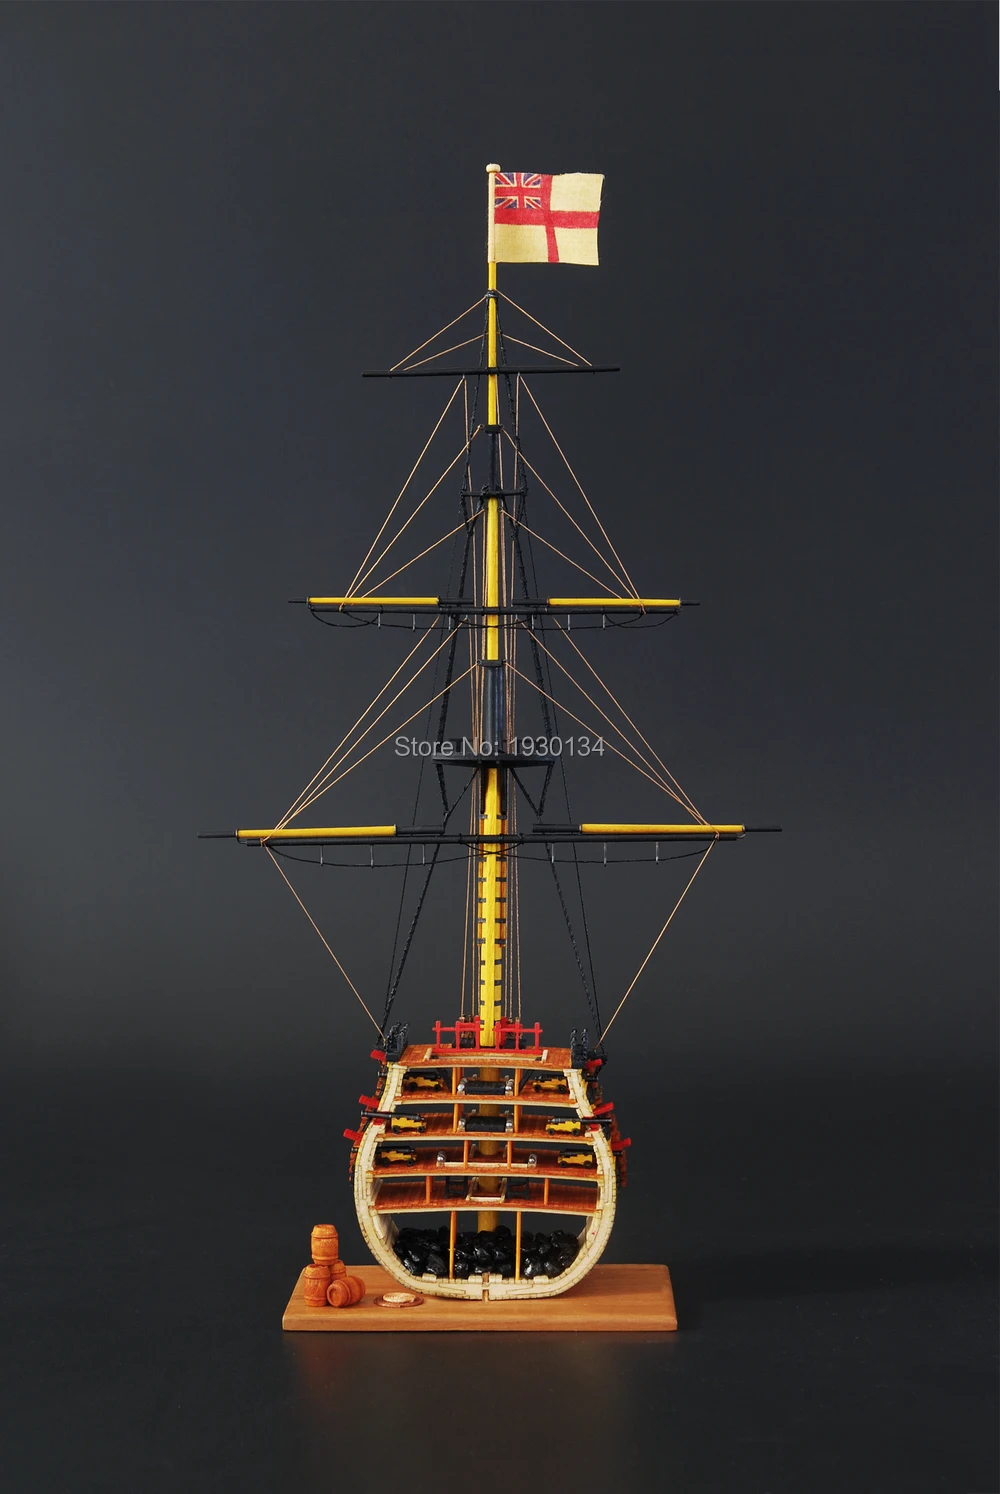 Любовная модель,, масштаб 1/200 HMS, деревянный парусник, латунные пушки, деревянная основа и декоративные наборы